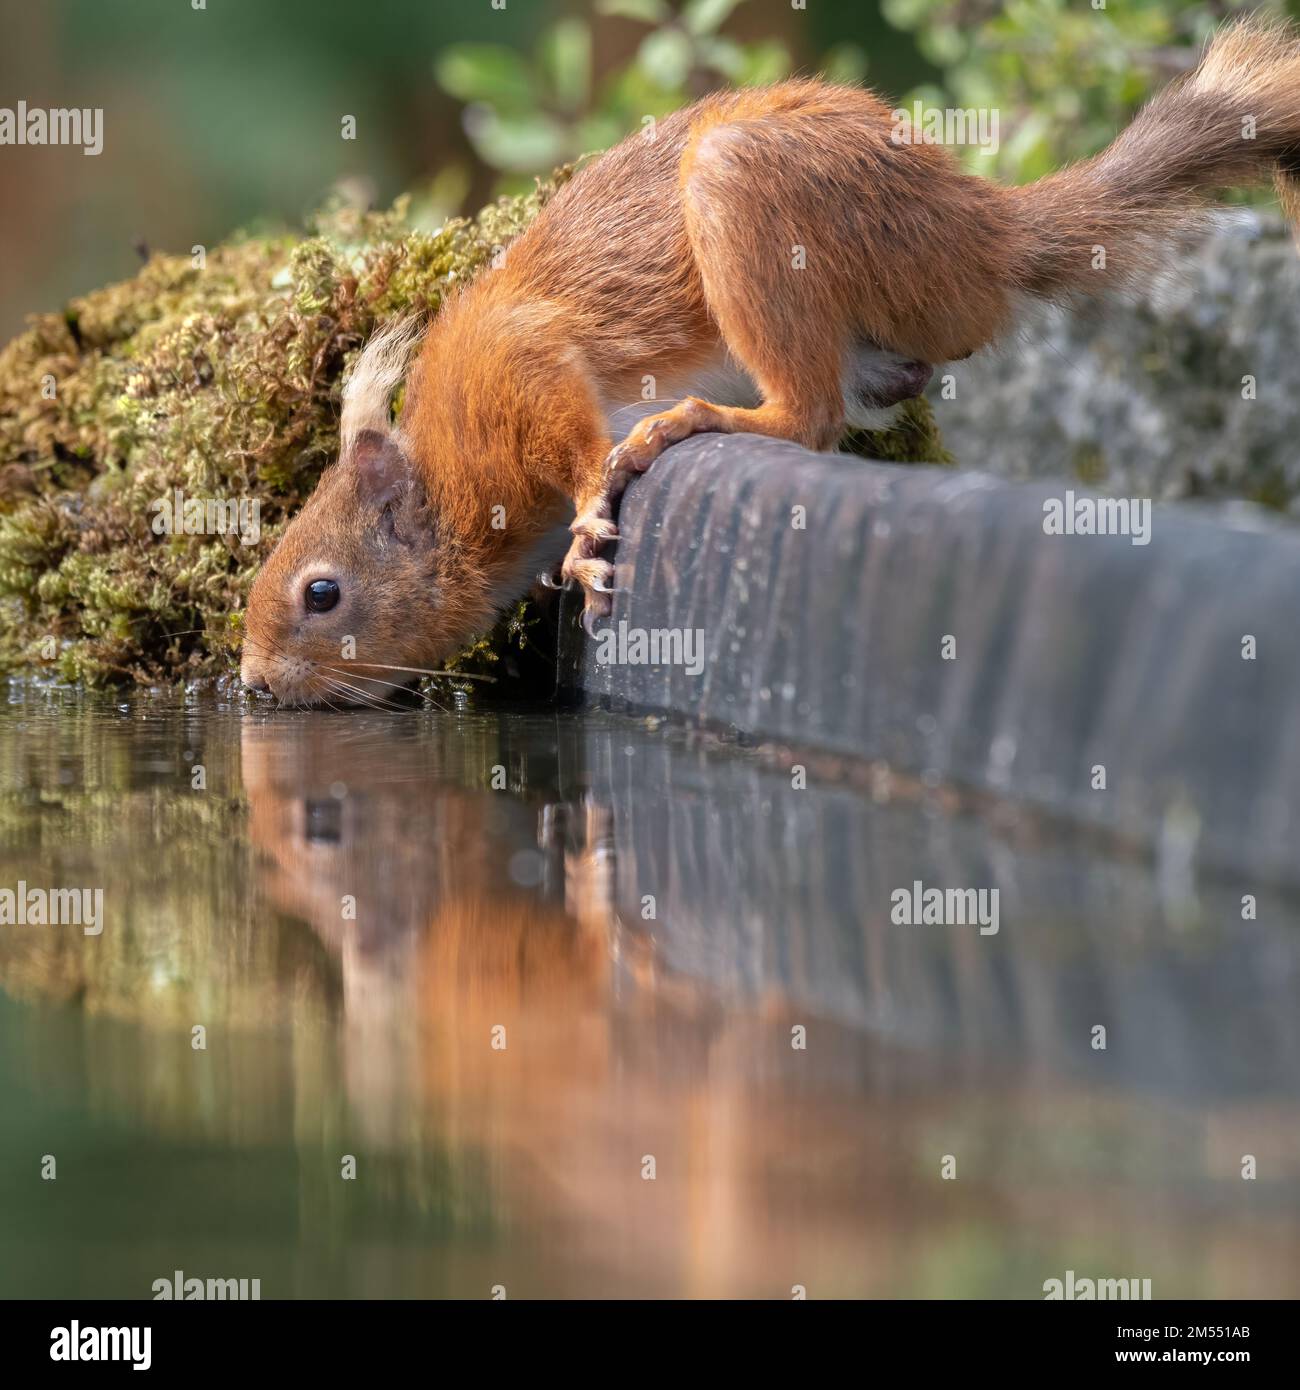 Un faible niveau de gros plan d'un écureuil rouge buvant d'une piscine. Il a une réflexion dans l'eau Banque D'Images